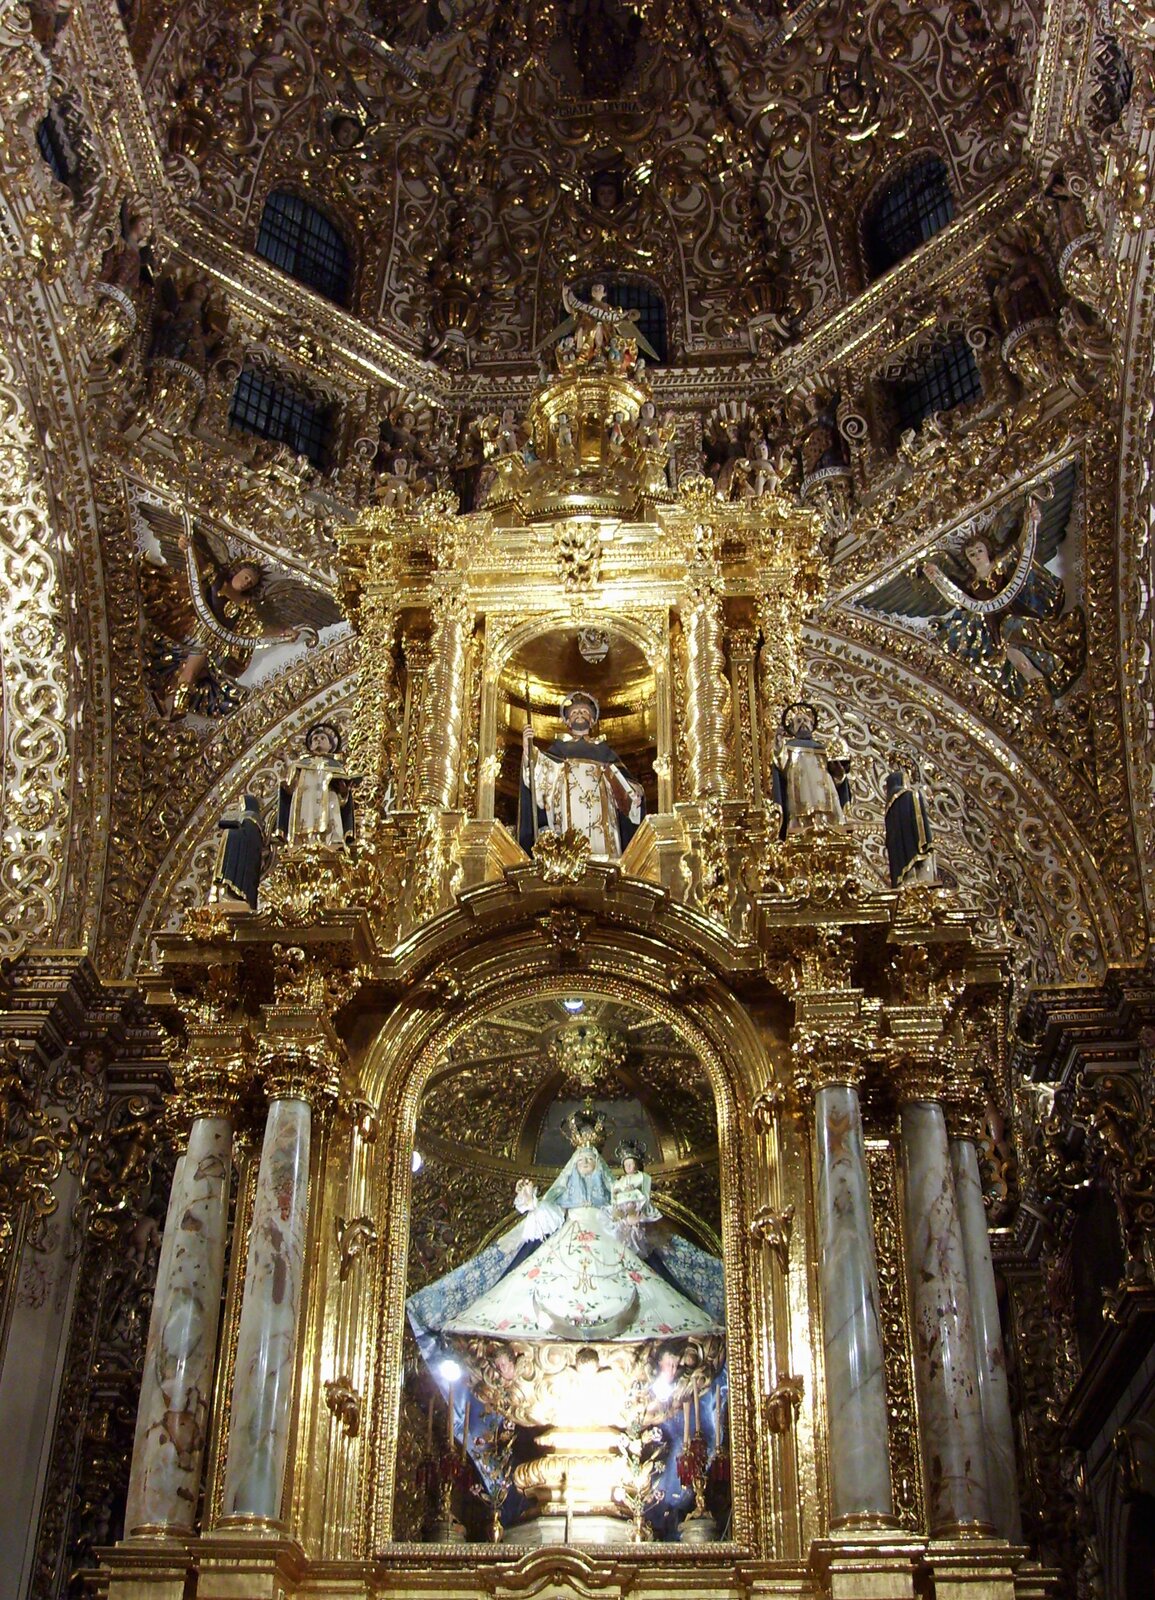 Ilustracja przedstawia barokowy ołtarz w meksykańskim kościele. Na ołtarzu stoi złoty tron Matki Bożej, który jest pokryty baldachimem. Głowice i podstawy kolumn są złote, podobnie jak łuki, pilastry oraz płaskorzeźby. 